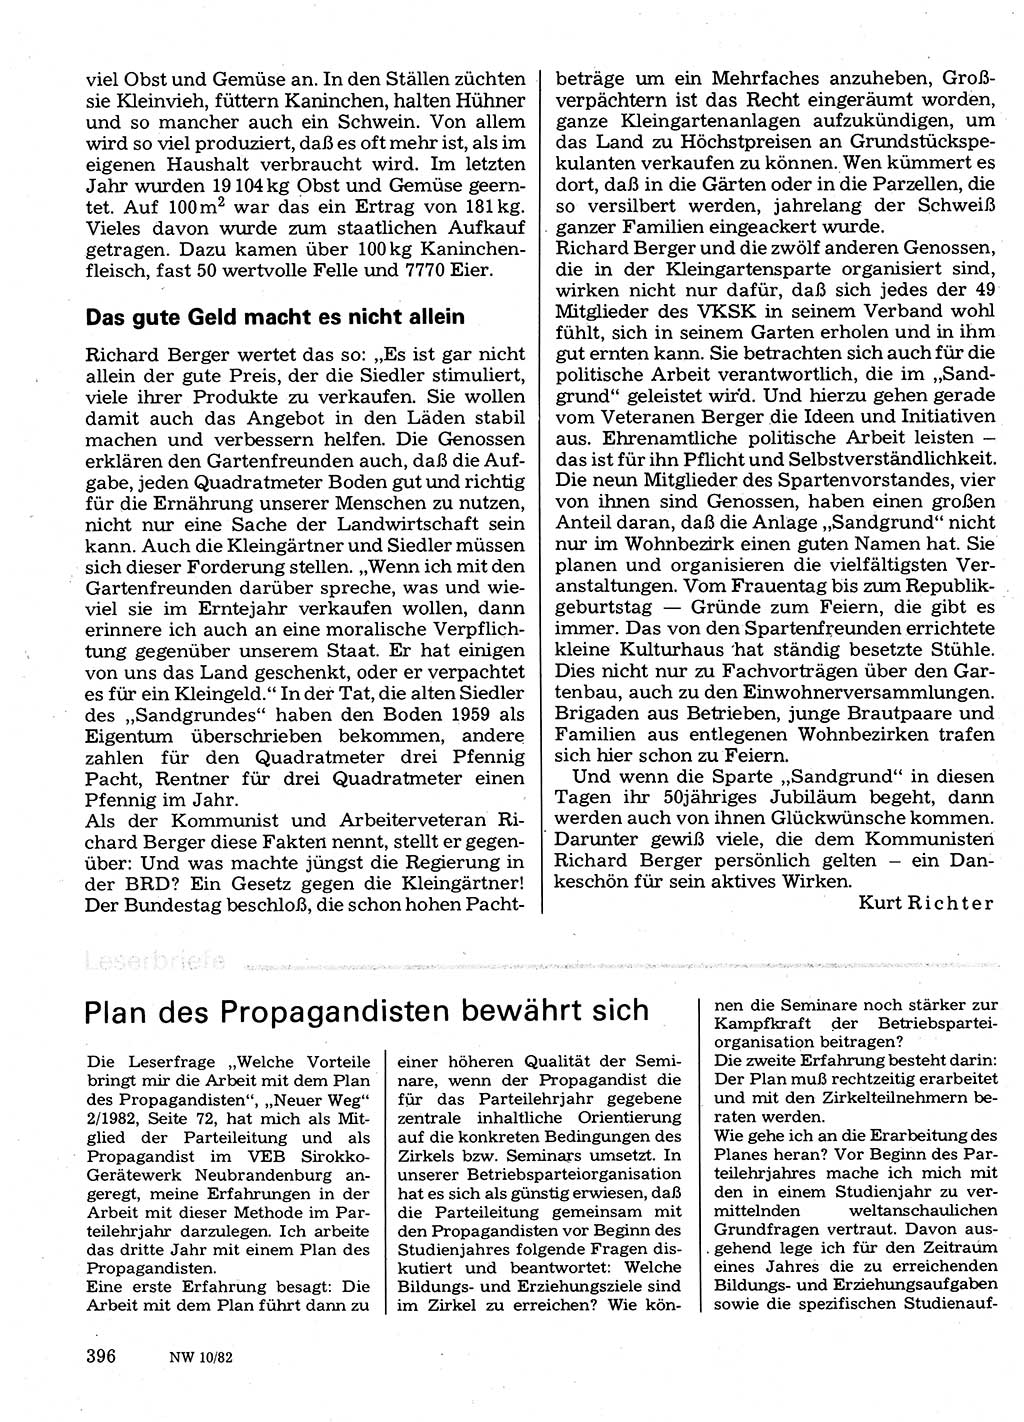 Neuer Weg (NW), Organ des Zentralkomitees (ZK) der SED (Sozialistische Einheitspartei Deutschlands) für Fragen des Parteilebens, 37. Jahrgang [Deutsche Demokratische Republik (DDR)] 1982, Seite 396 (NW ZK SED DDR 1982, S. 396)